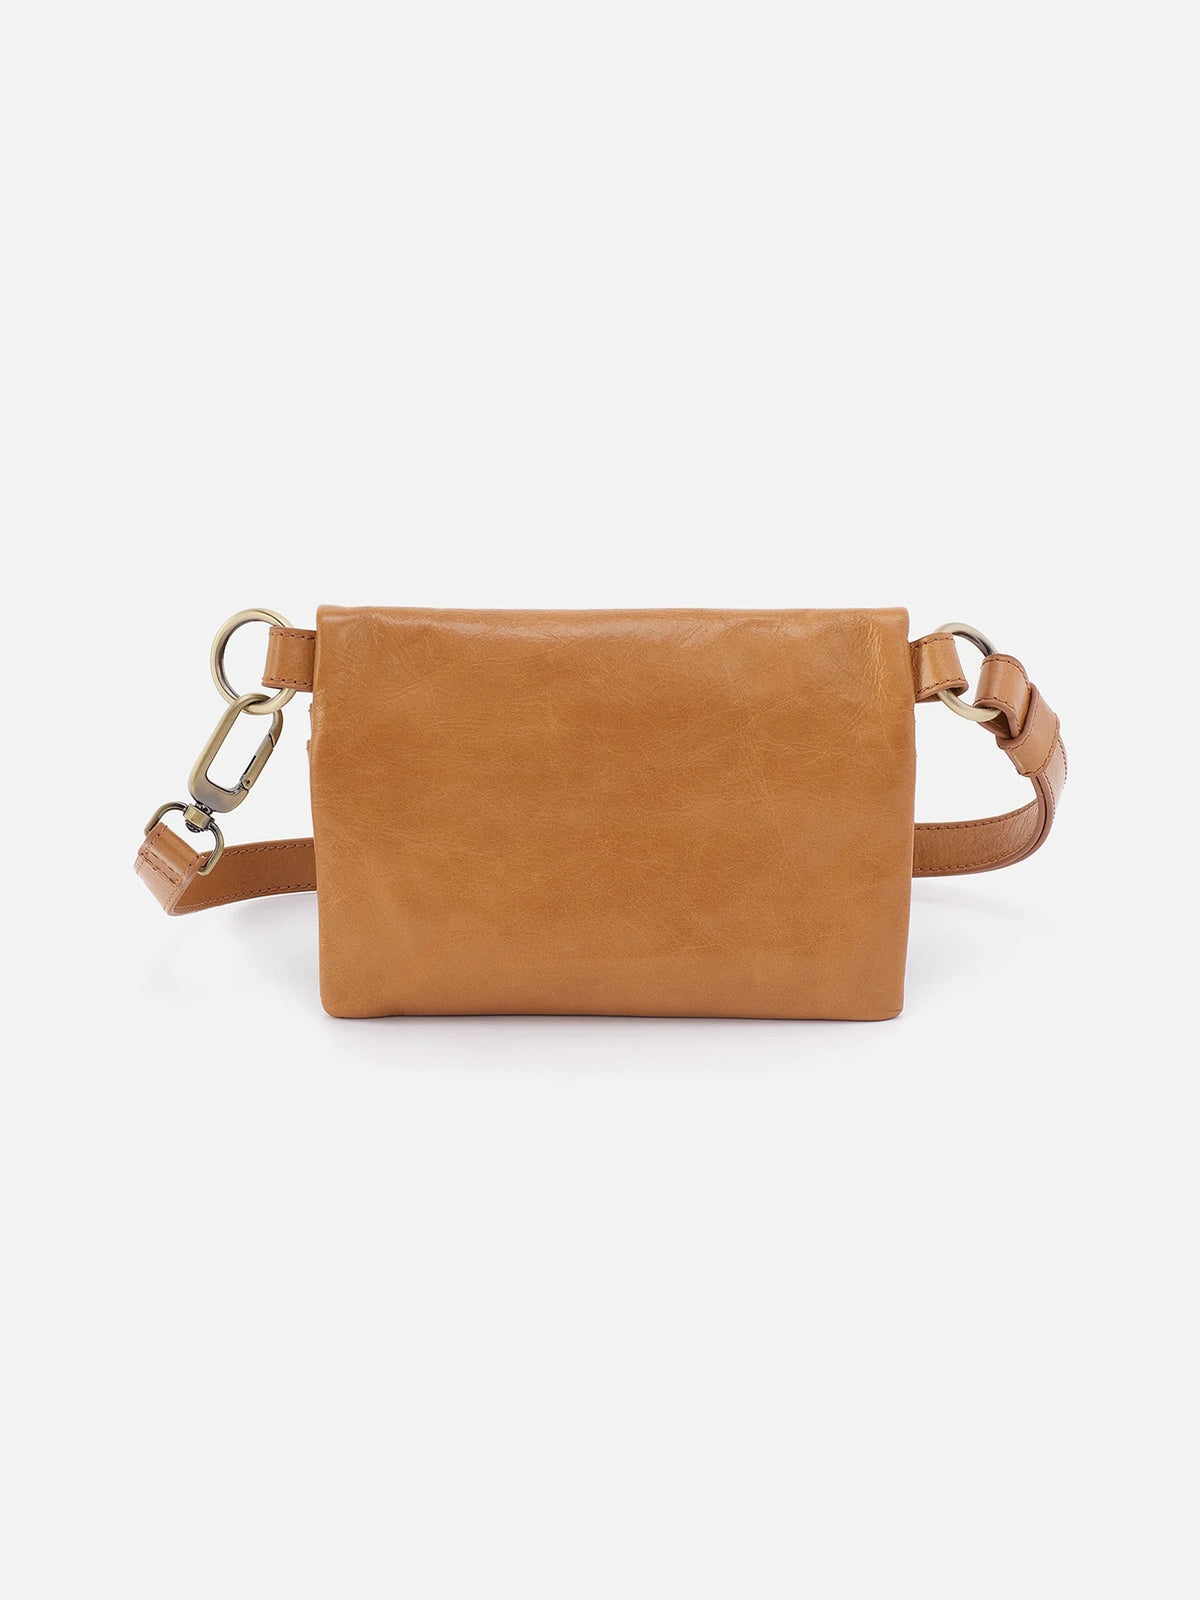 hobo winn belt bag in natural polished leather